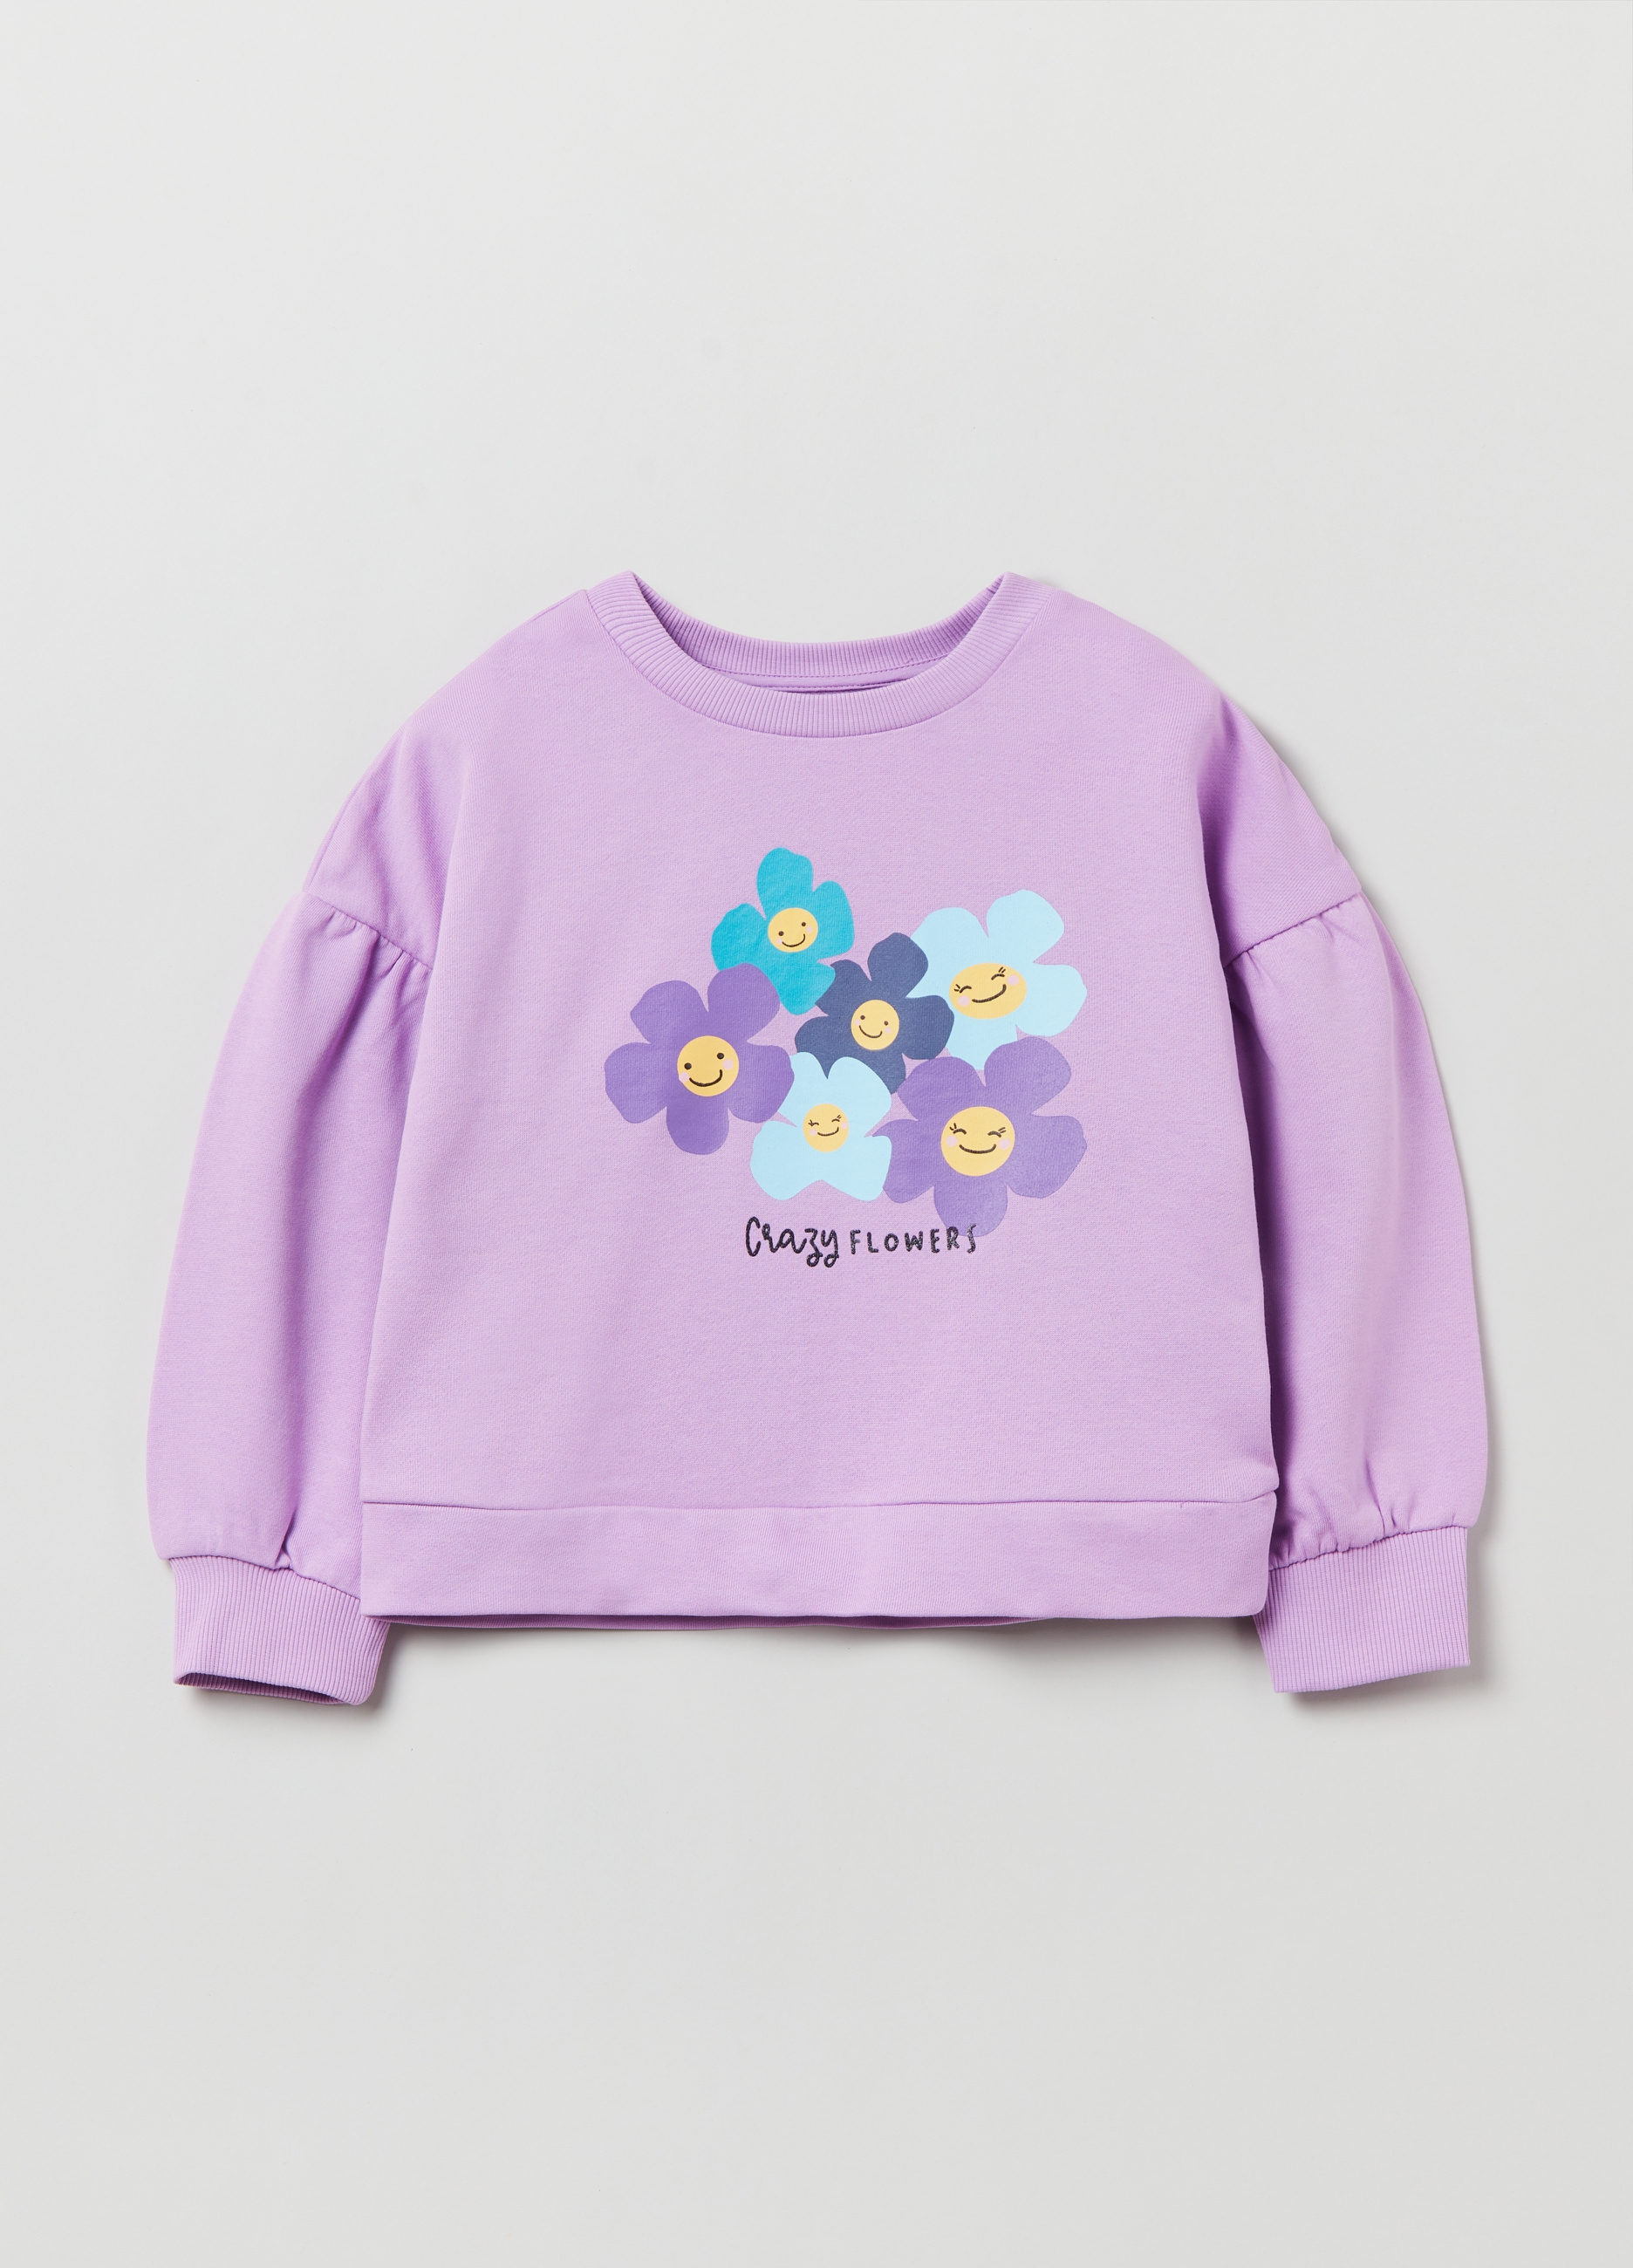 Фуфайка OVS для девочек, фиолетовая, 7-8 лет, 1893089 комплект для девочек фуфайка трикотажная футболка шорты текстильные